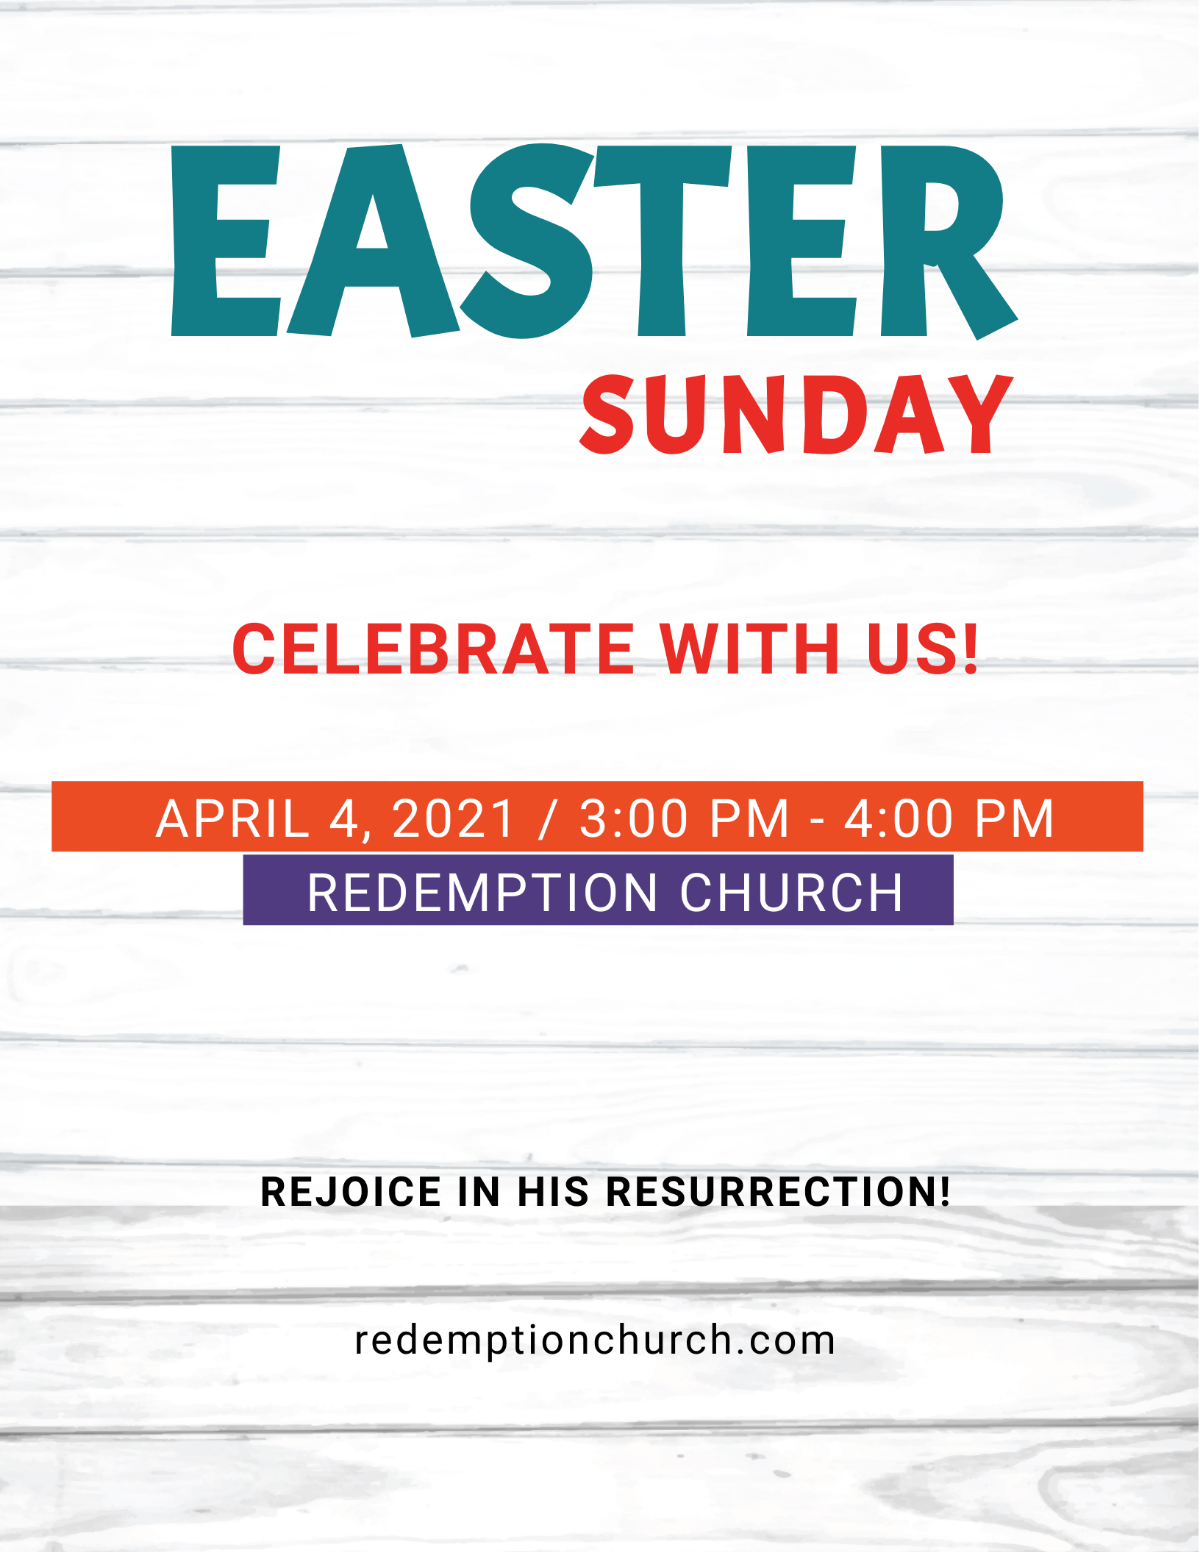 Easter Sunday Risen Flyer Template